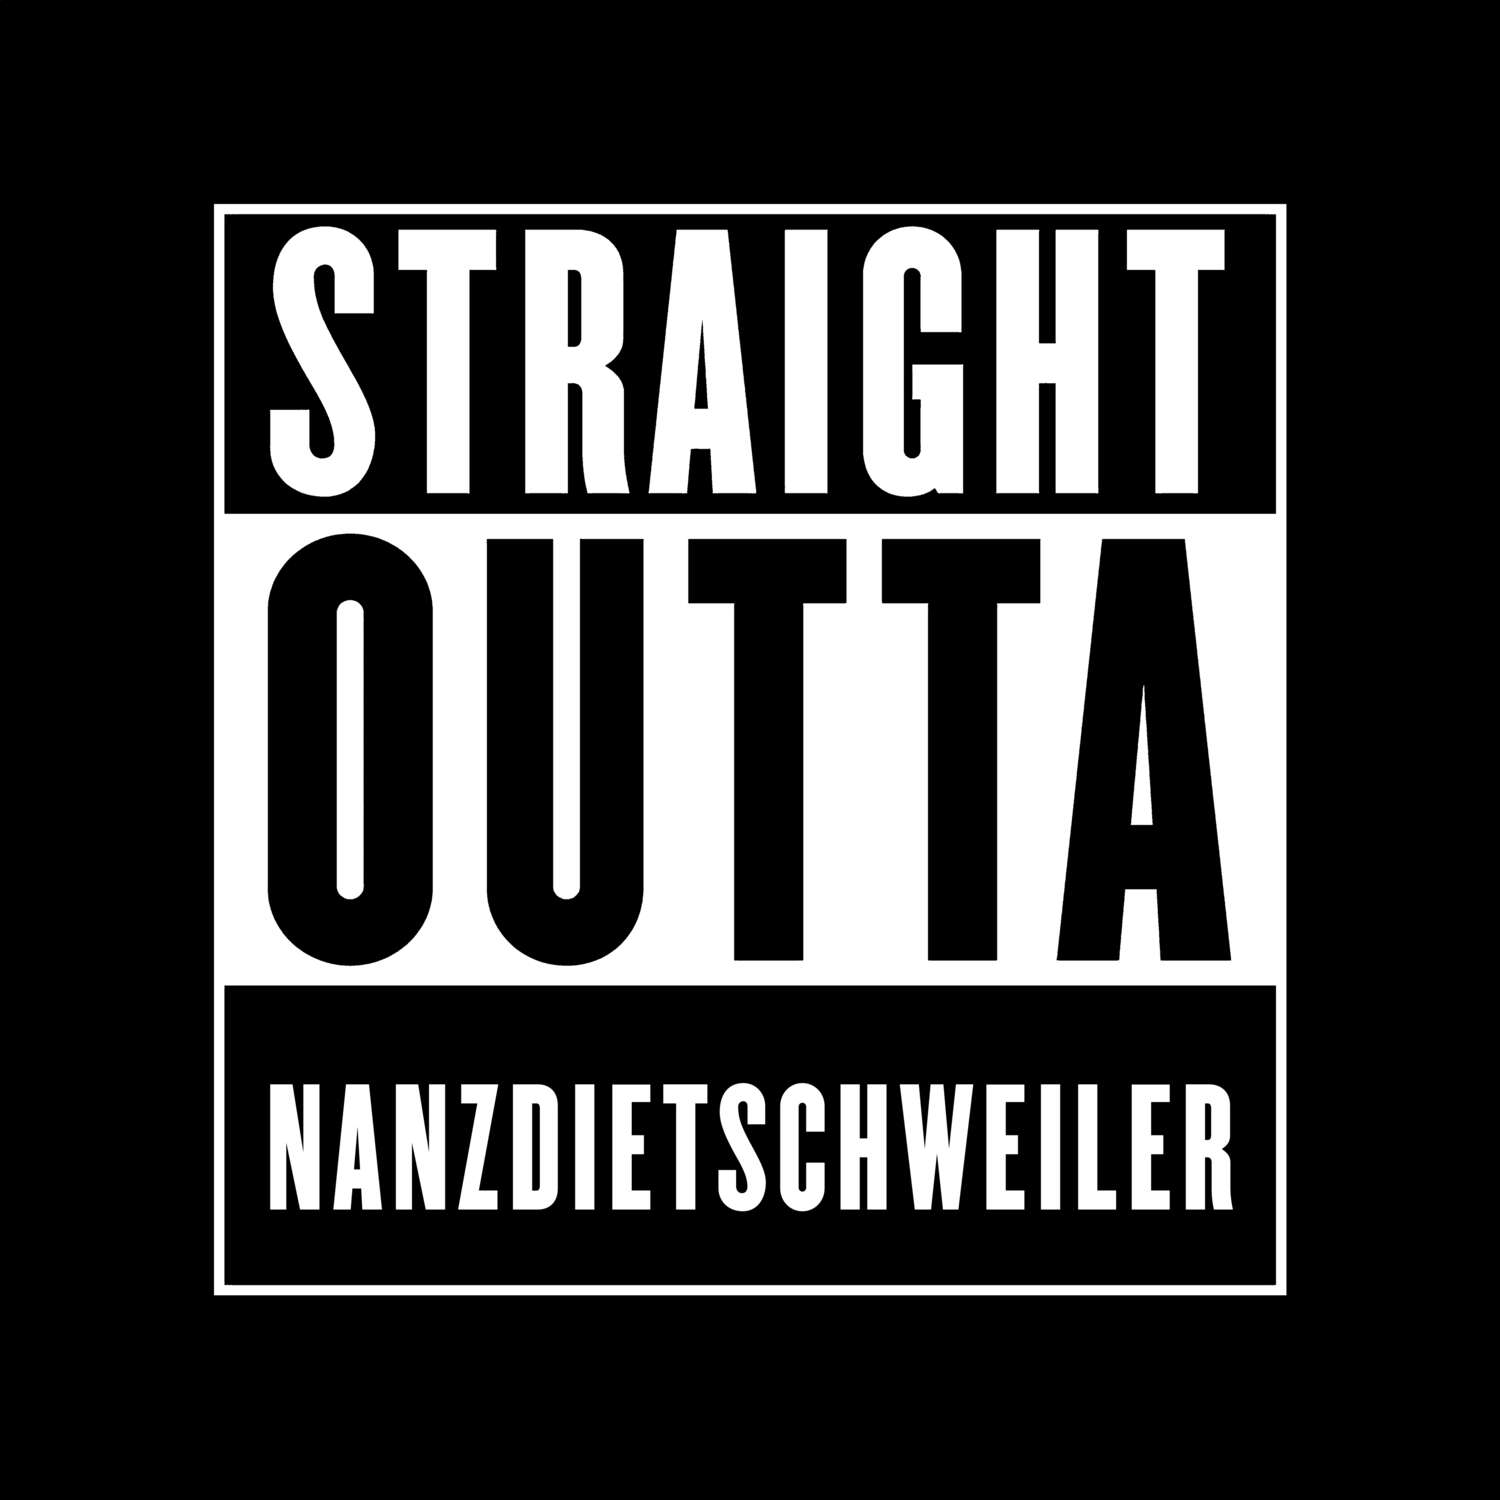 Nanzdietschweiler T-Shirt »Straight Outta«